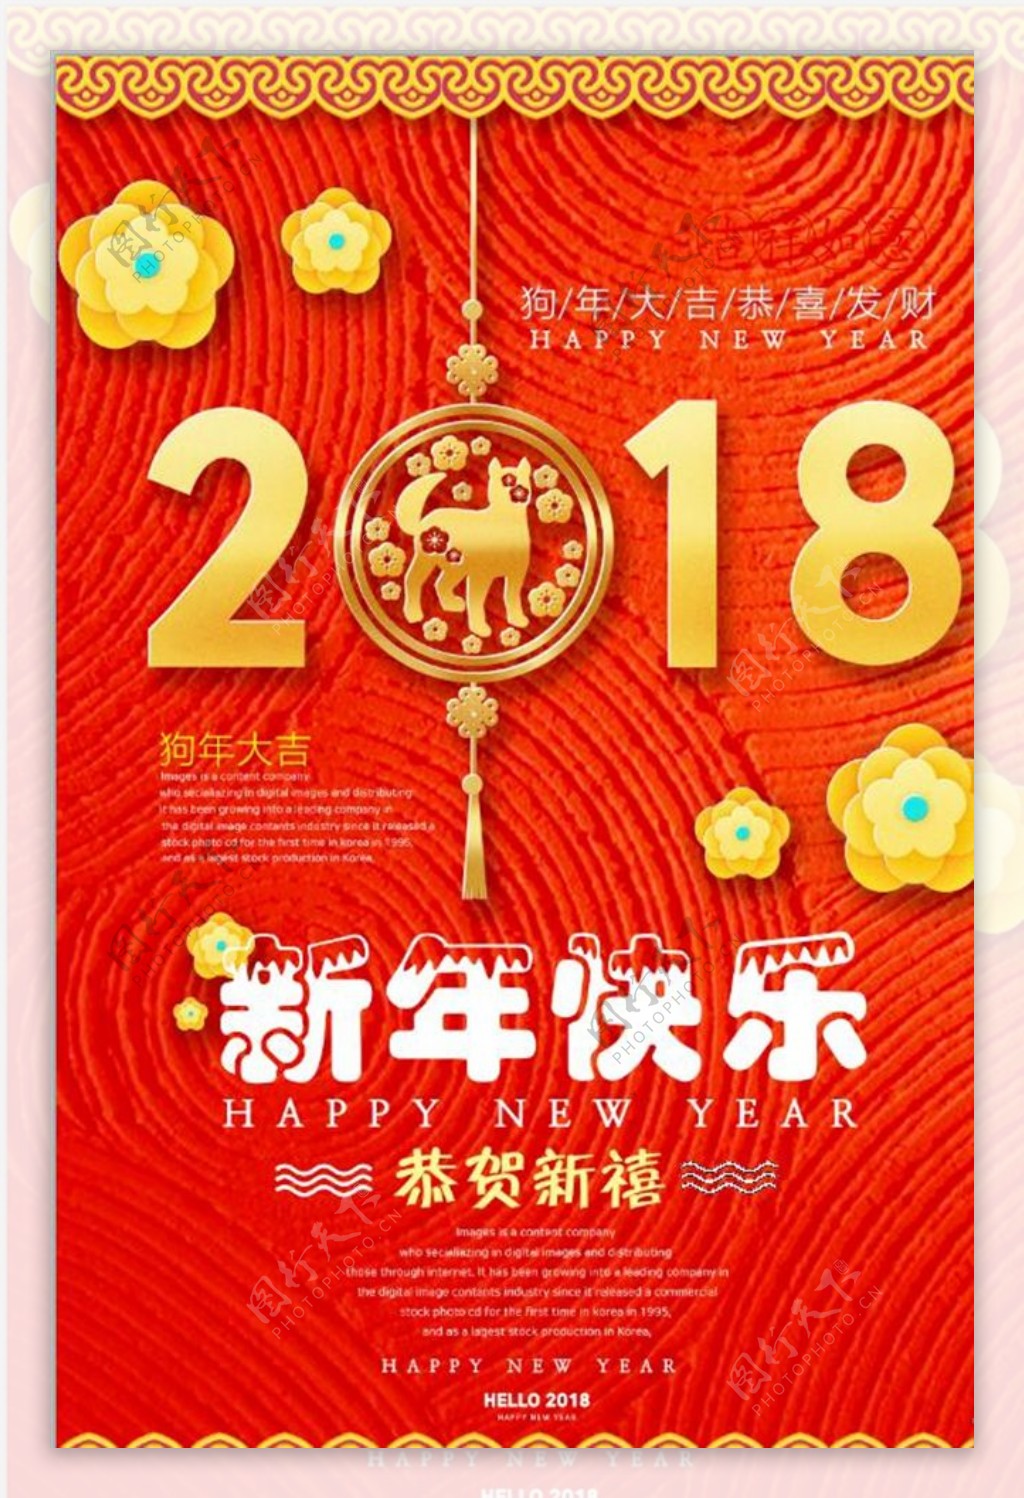 新年快乐2018海报设计